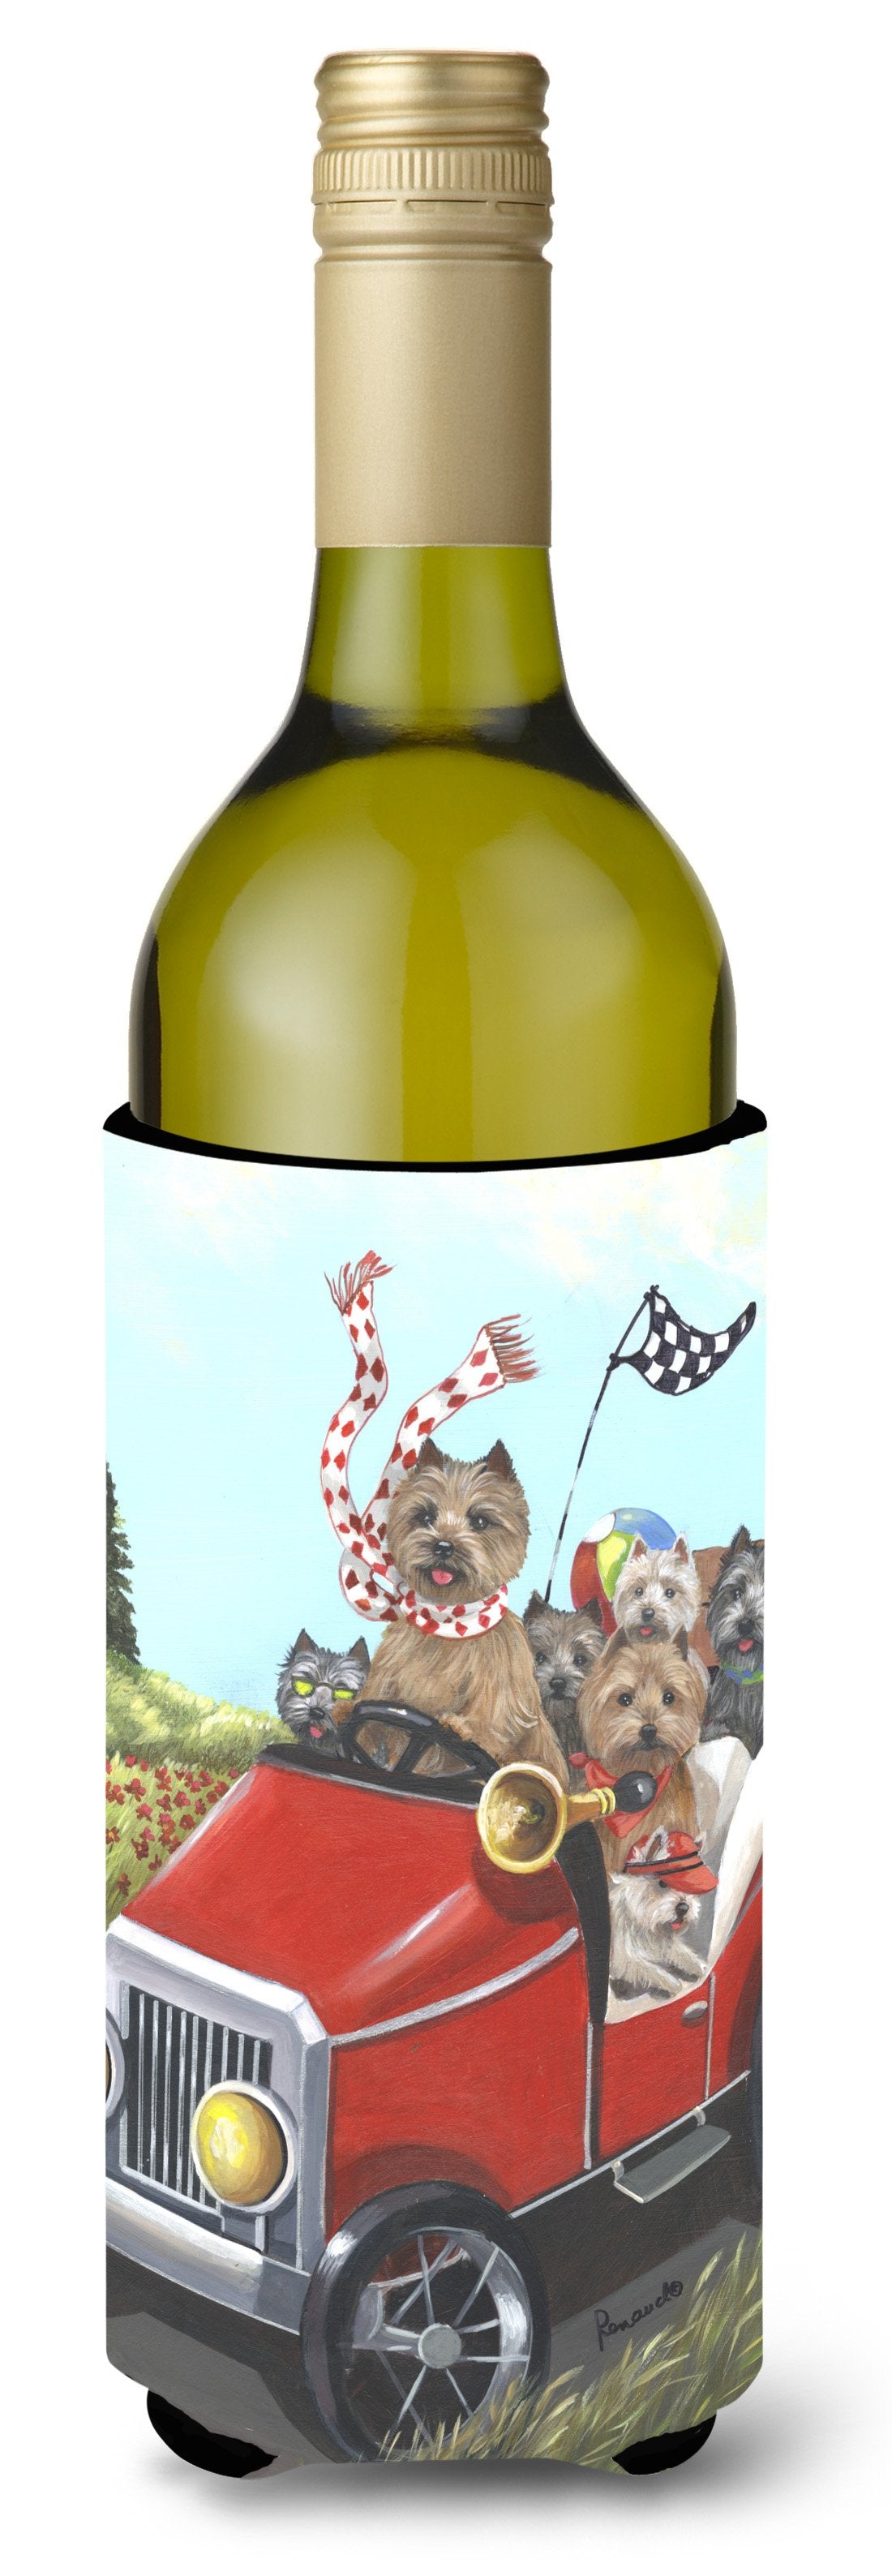 Cairn Terrier On the Move Wine Bottle Hugger PPP3055LITERK by Caroline's Treasures